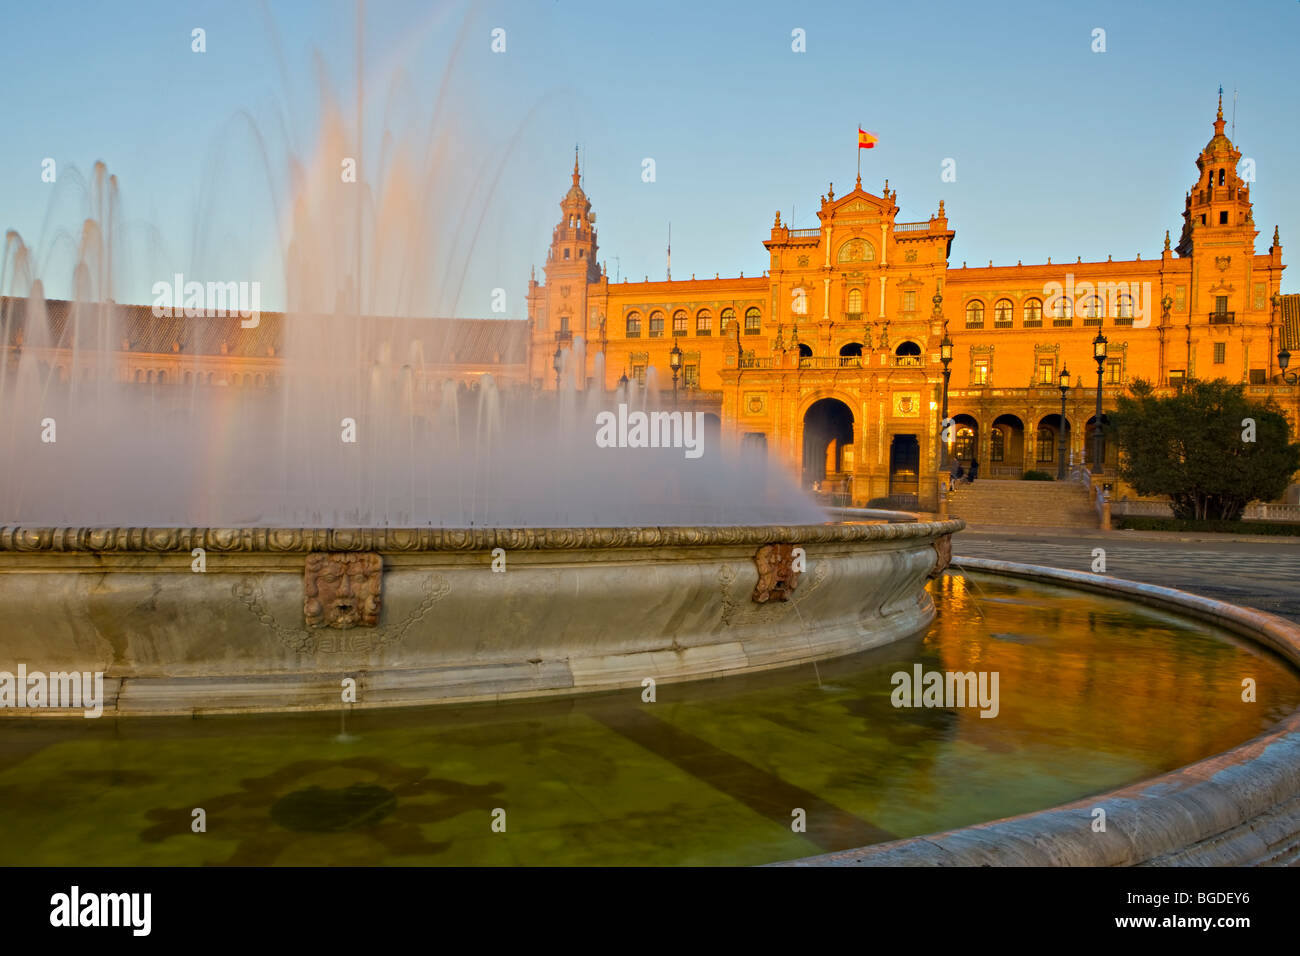 Zentrale Gebäude und Brunnen in Plaza de España, Parque Maria Luisa, während des Sonnenuntergangs in der Stadt Sevilla (Sevilla), Provinz o Stockfoto